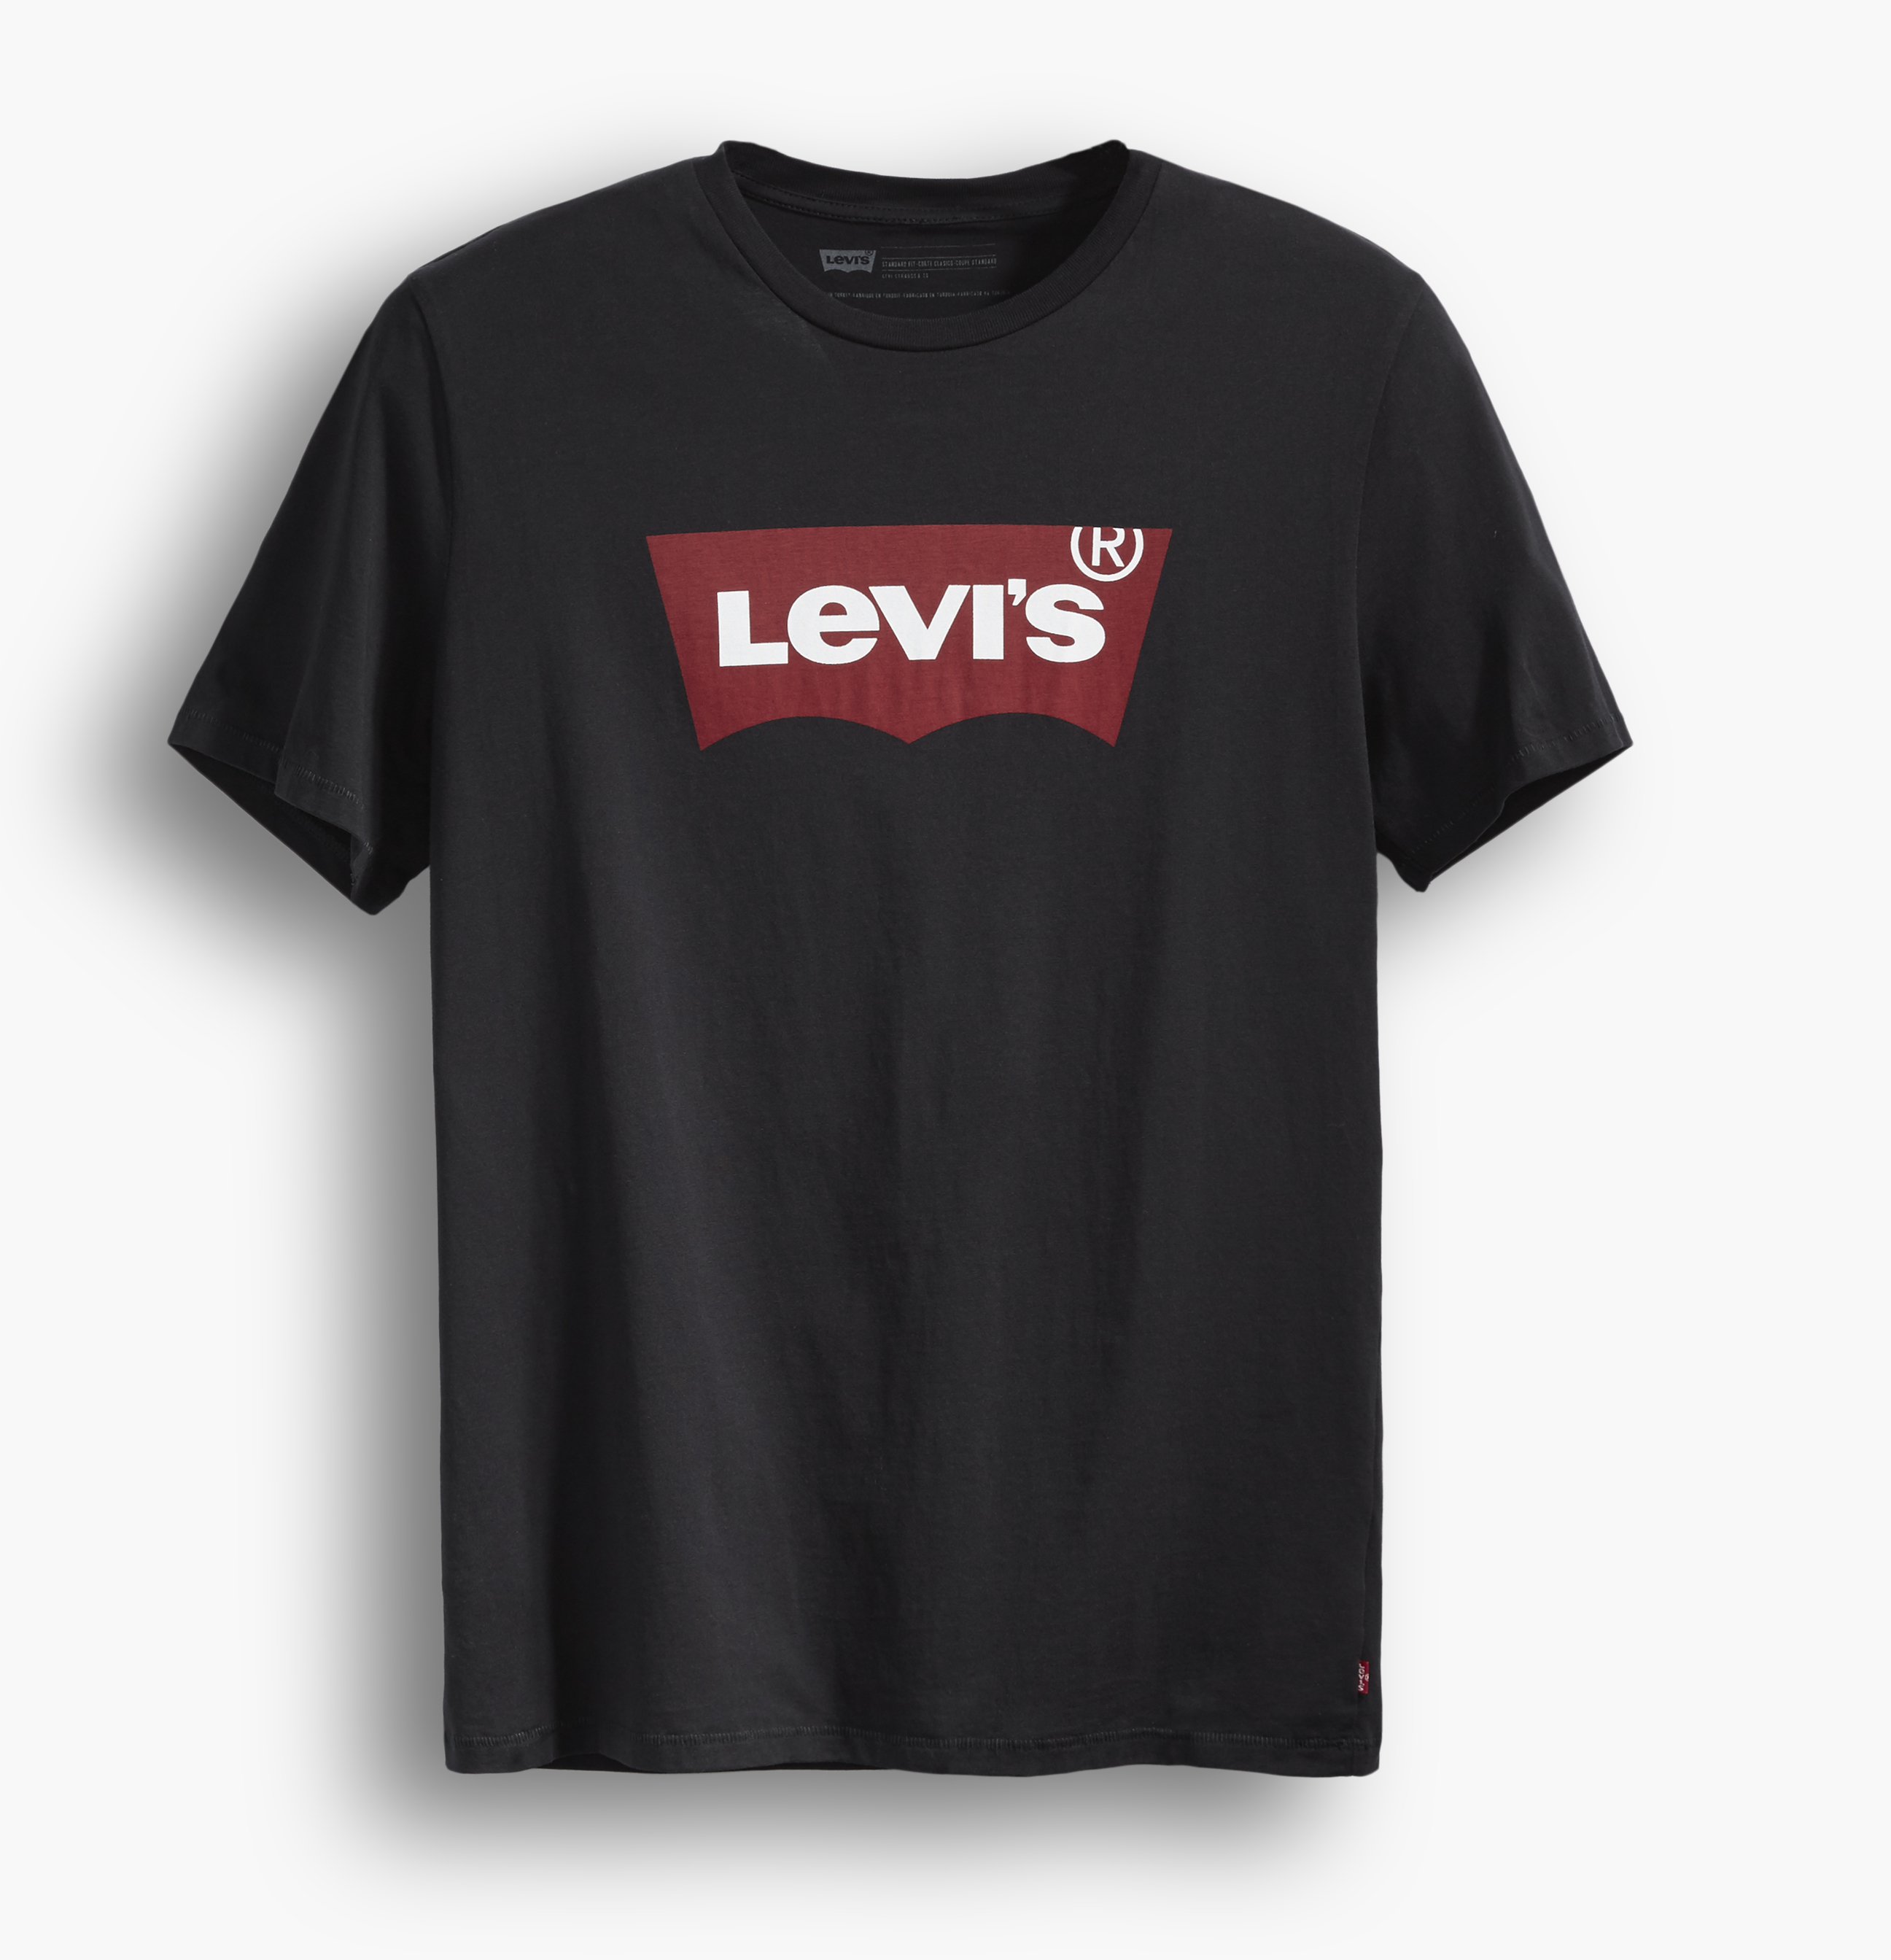 LEVIS Shirts Rundhals T-Shirt 17783-0137 schwarz W18-LVT1